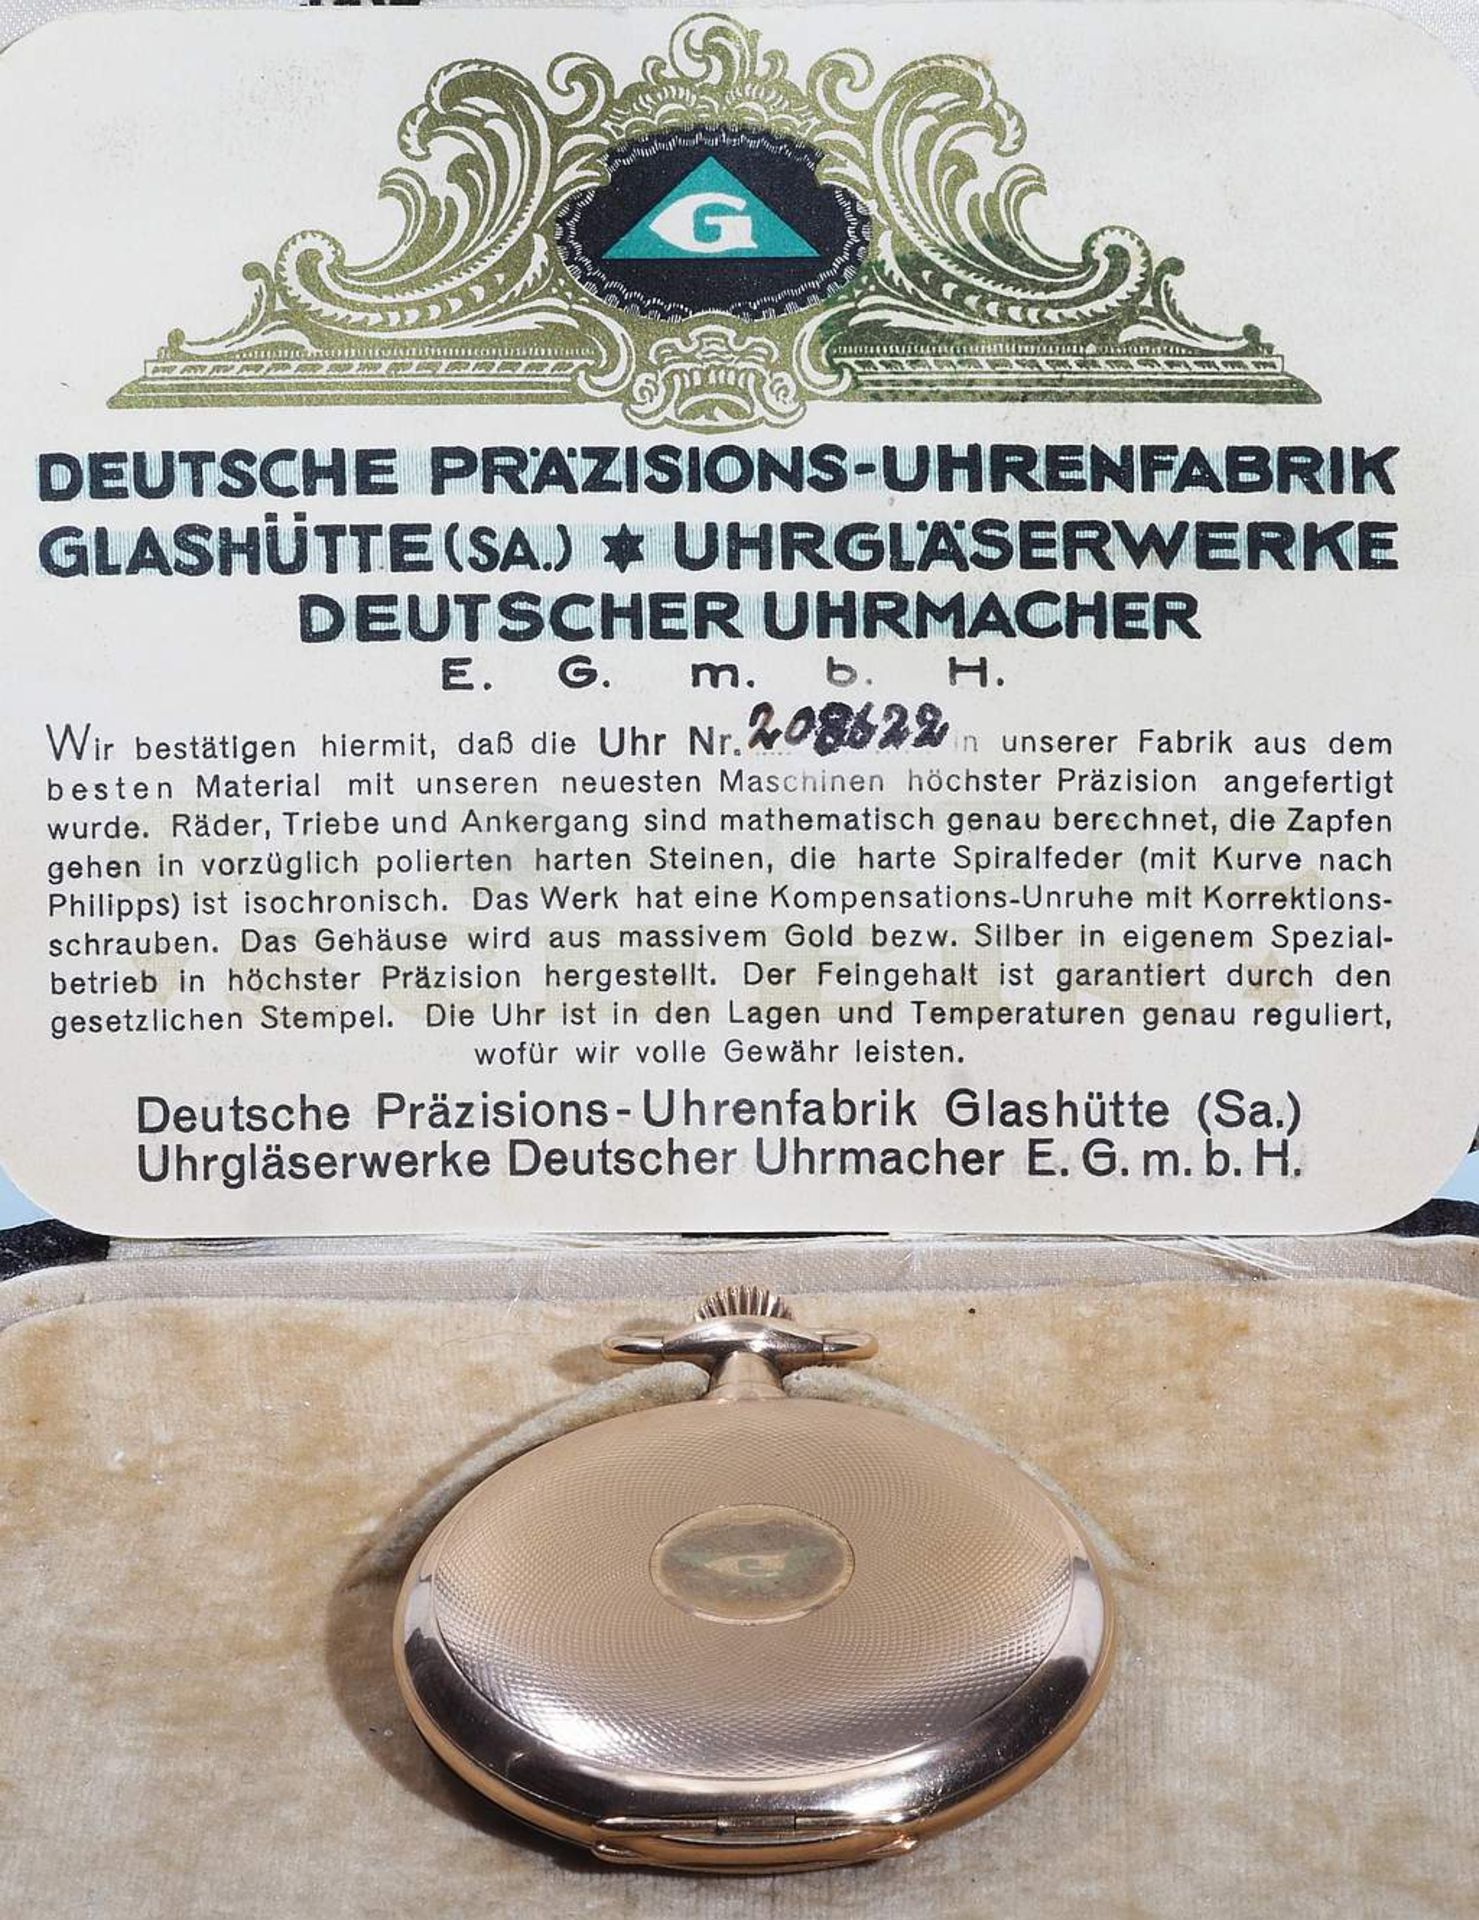 Savonette / Sprungdeckel Taschenuhr. Deutsche Präzisions-Uhrenfabrik Glashütte. Referenznummer - Bild 10 aus 10